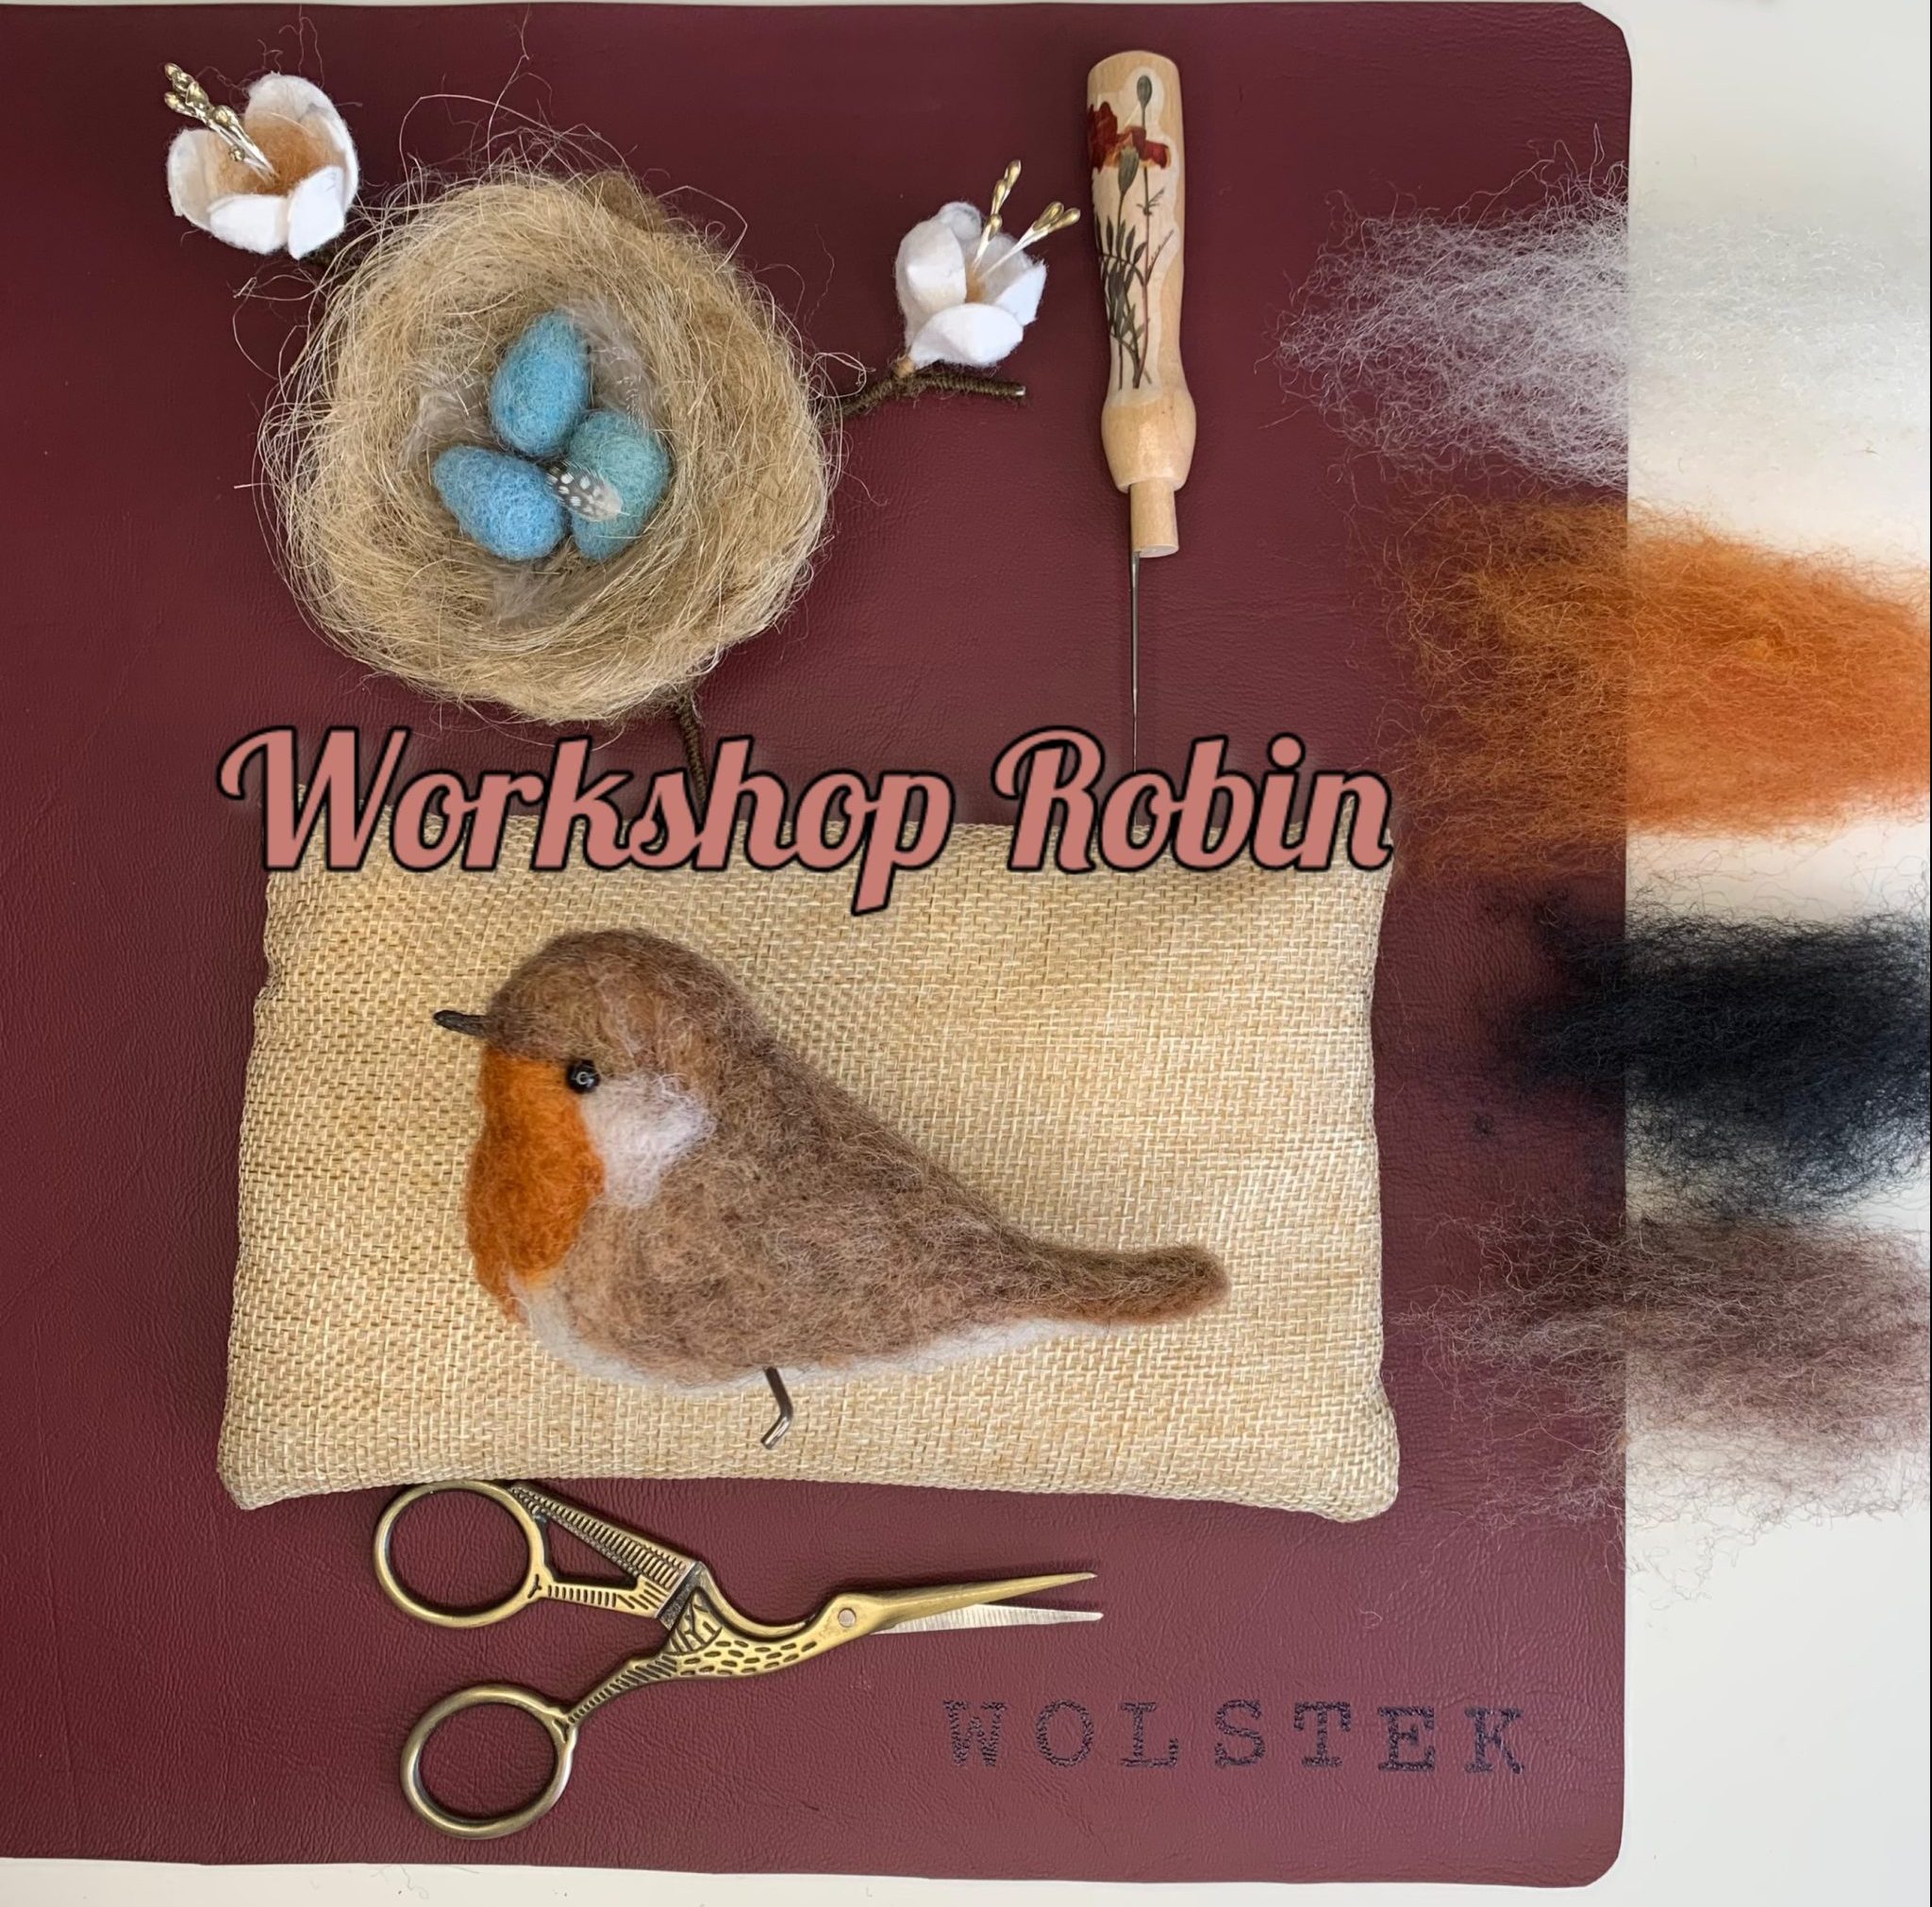 [VOL] Workshop ‘Robin’ naaldvilten